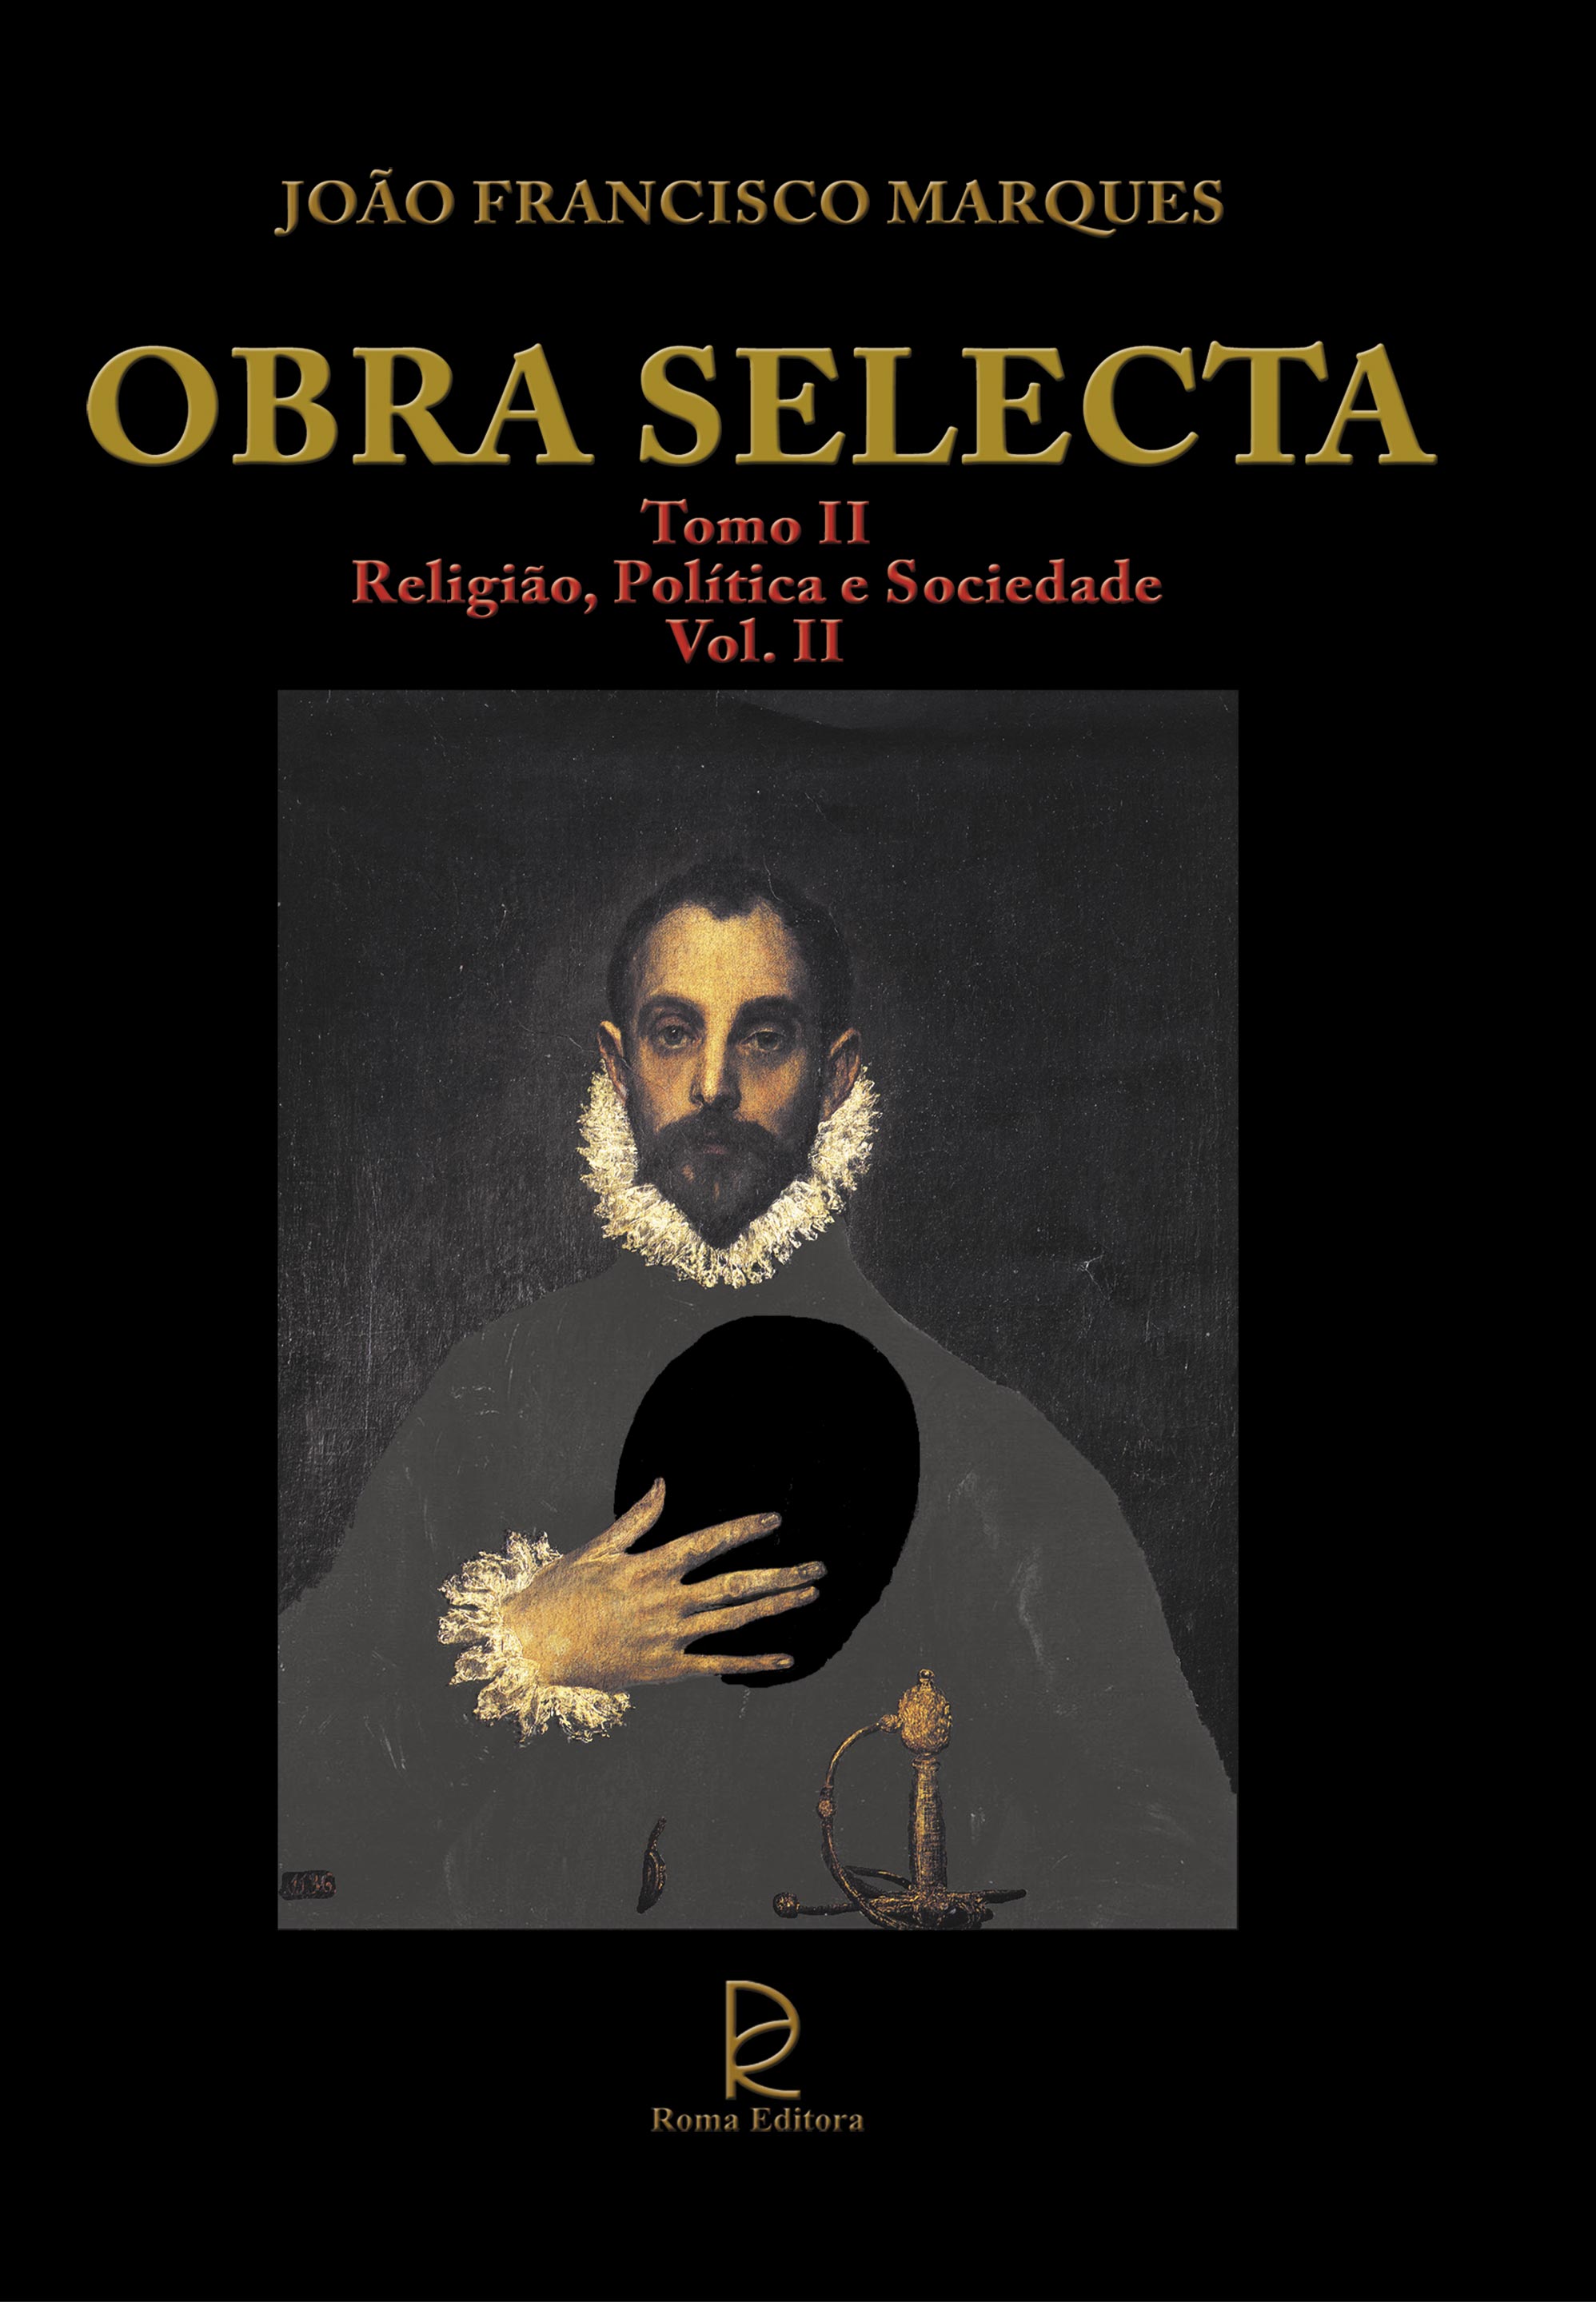 Obra Selecta (4th Volume)